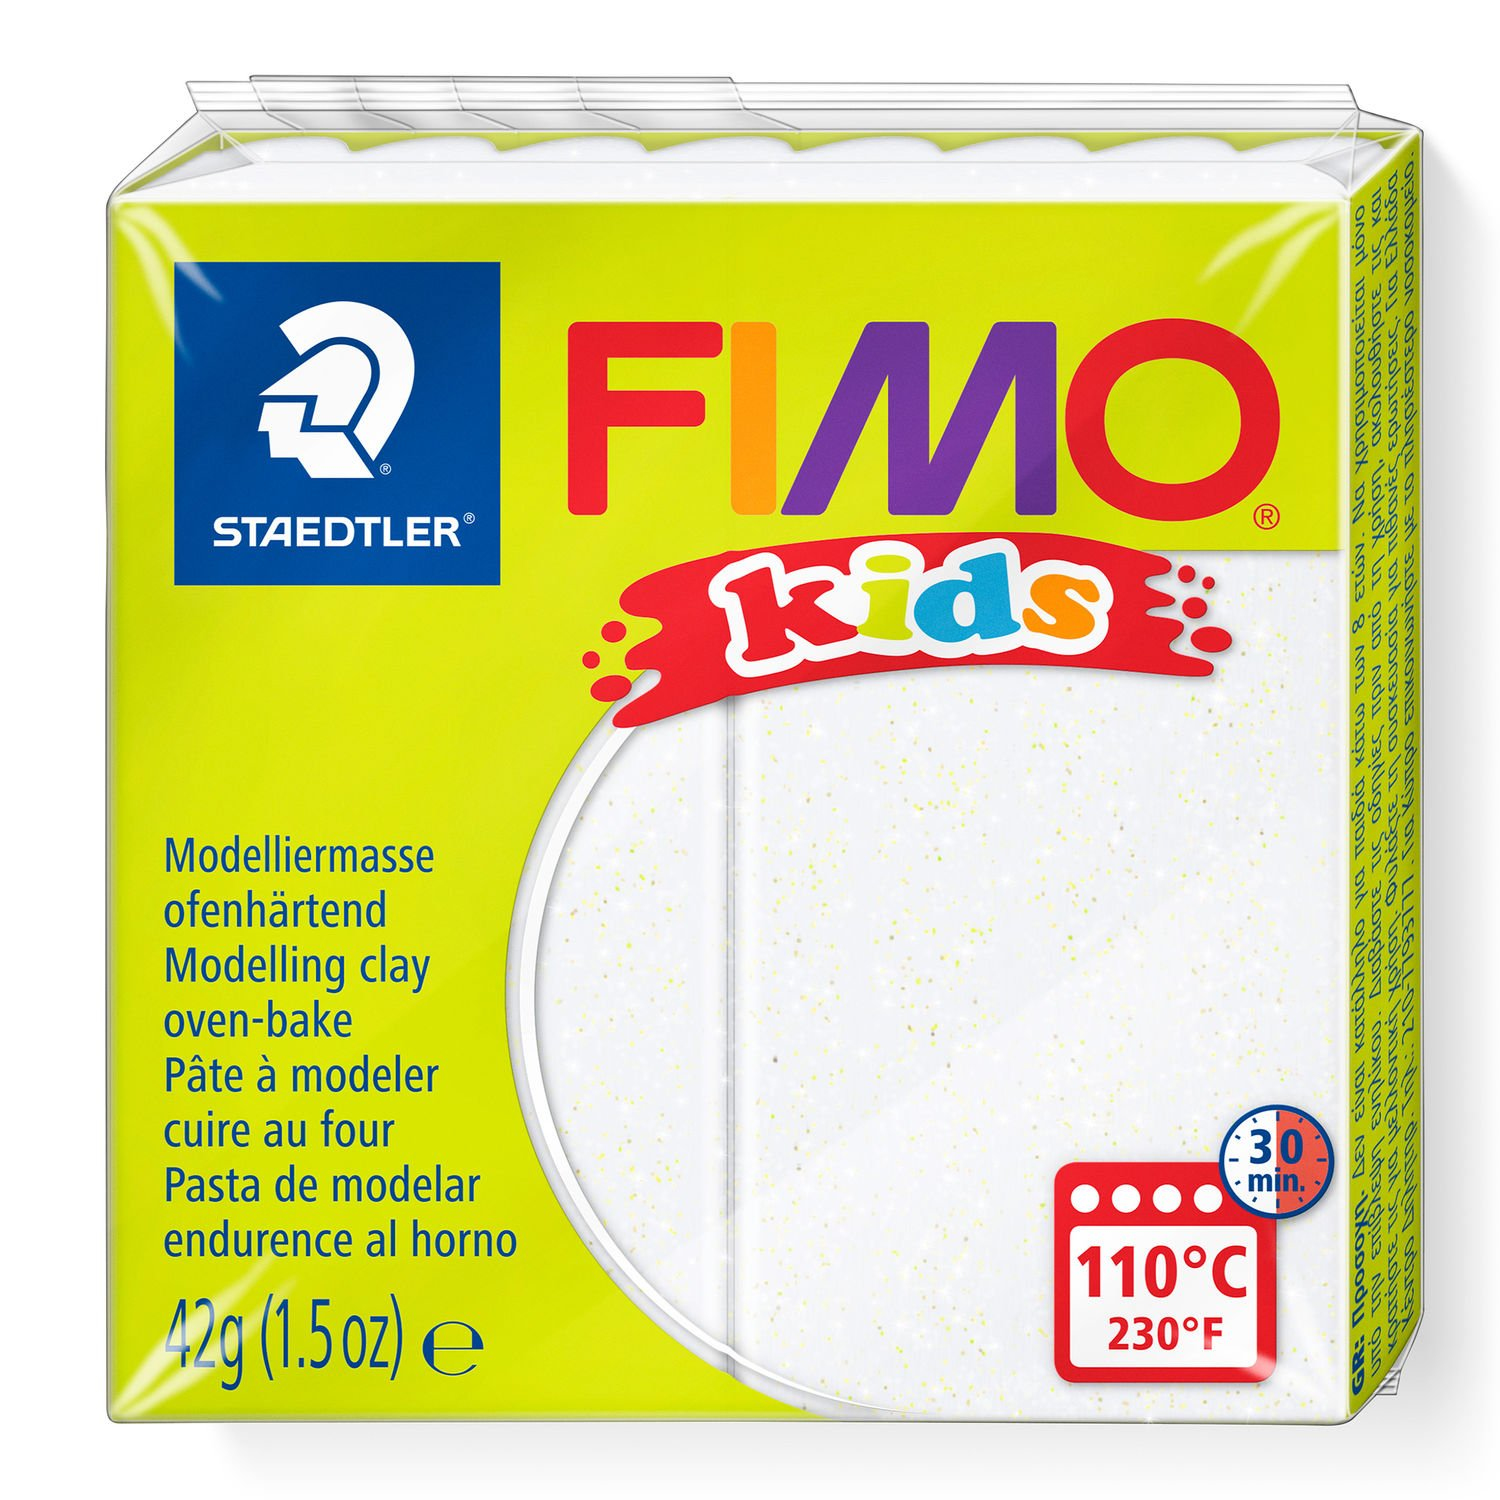 STAEDTLER FIMO 8030 - Knetmasse - Weiß - Kinder - 1 Stück(e) - Glitter white - 1 Farben